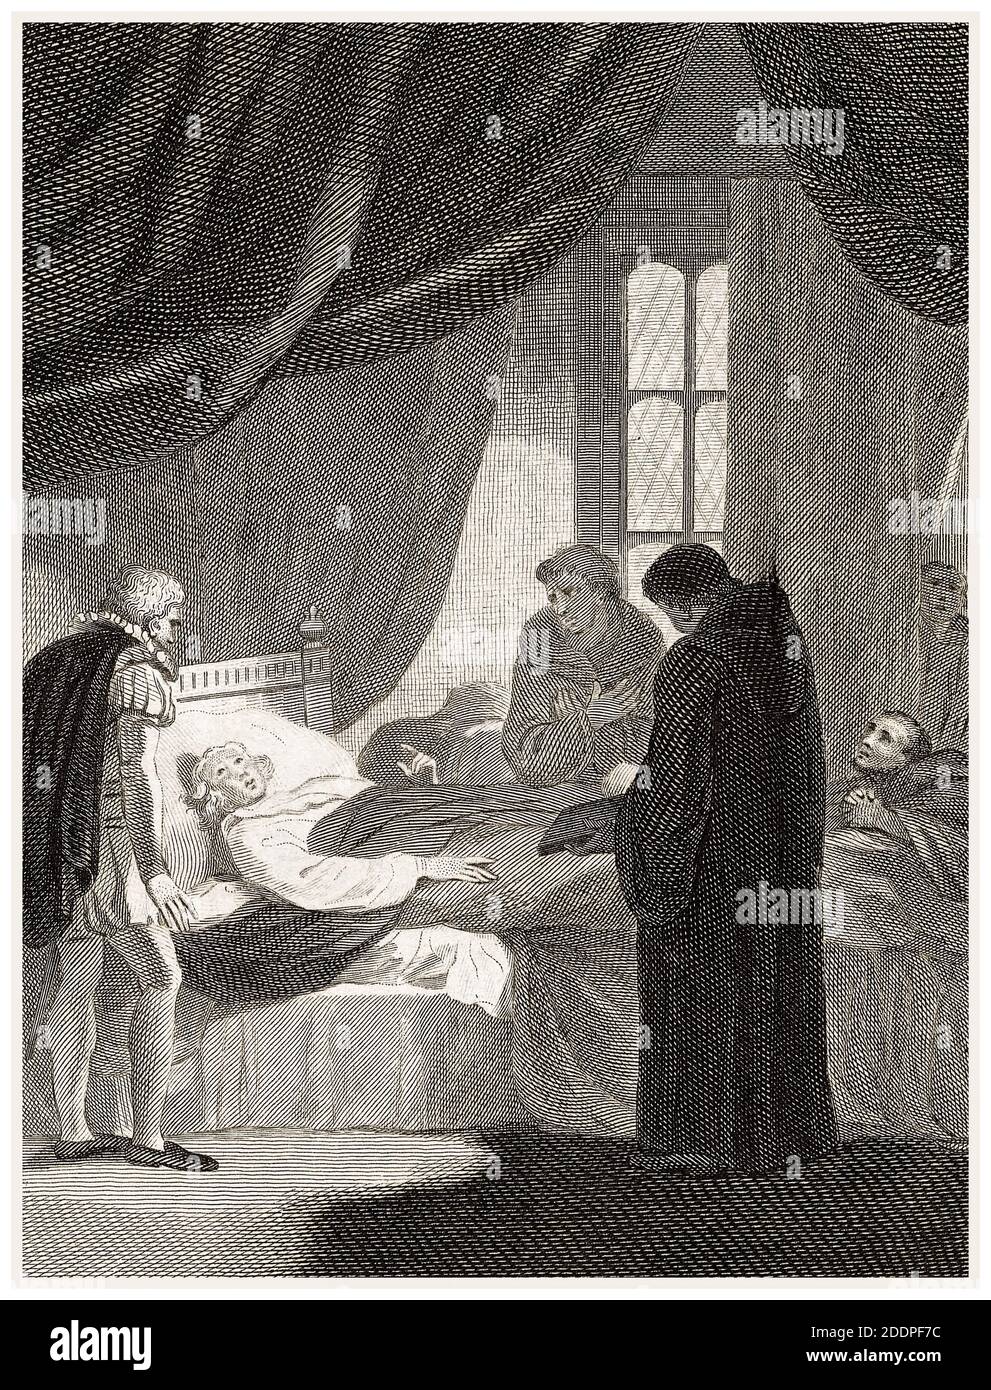 Der Tod von Kardinal Wolsey (Thomas Wolsey, 1473-1530) am 29. November 1530, Stich von Philip Audinet nach Robert Smirke, 1811 Stockfoto